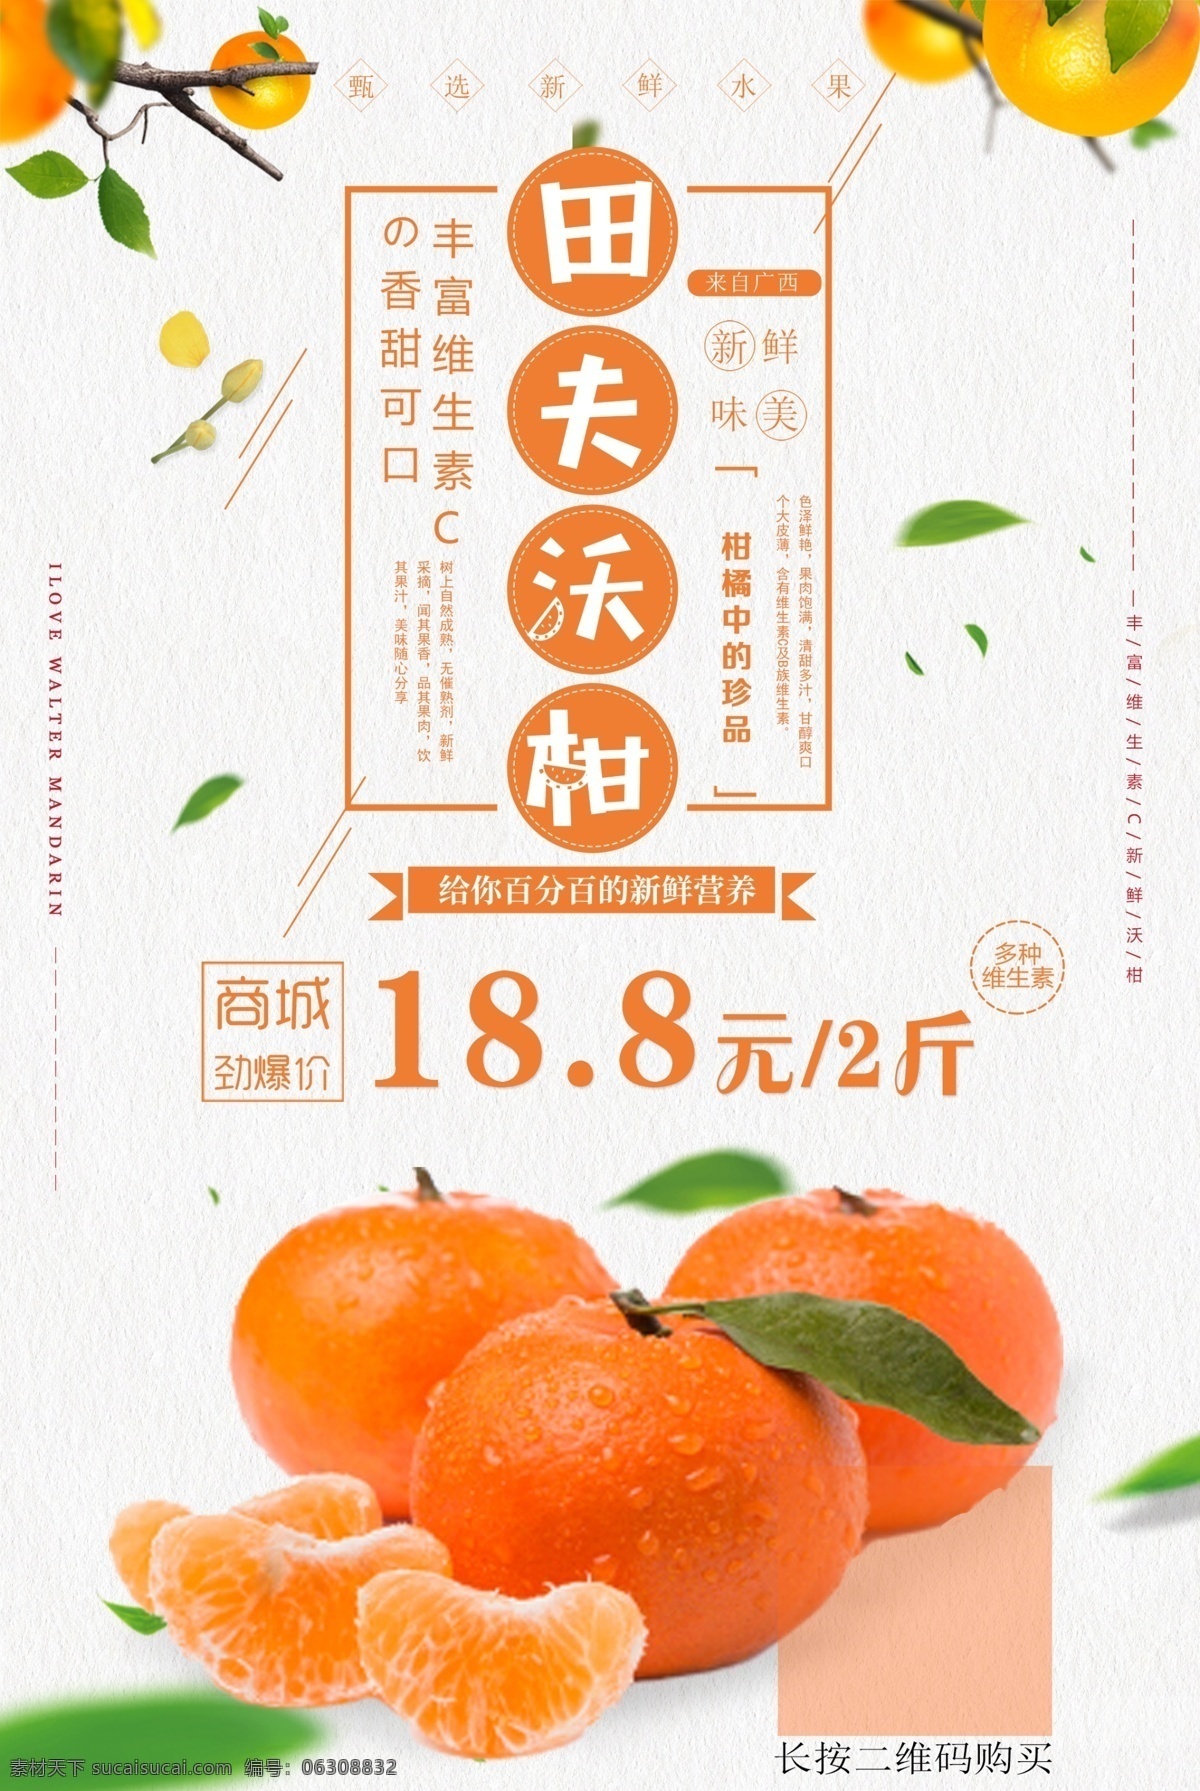 清新 沃 柑橘 子 美食 海报 柑橘海报 橘子 水果海报 小清新风格 桔子海报 沃柑海报